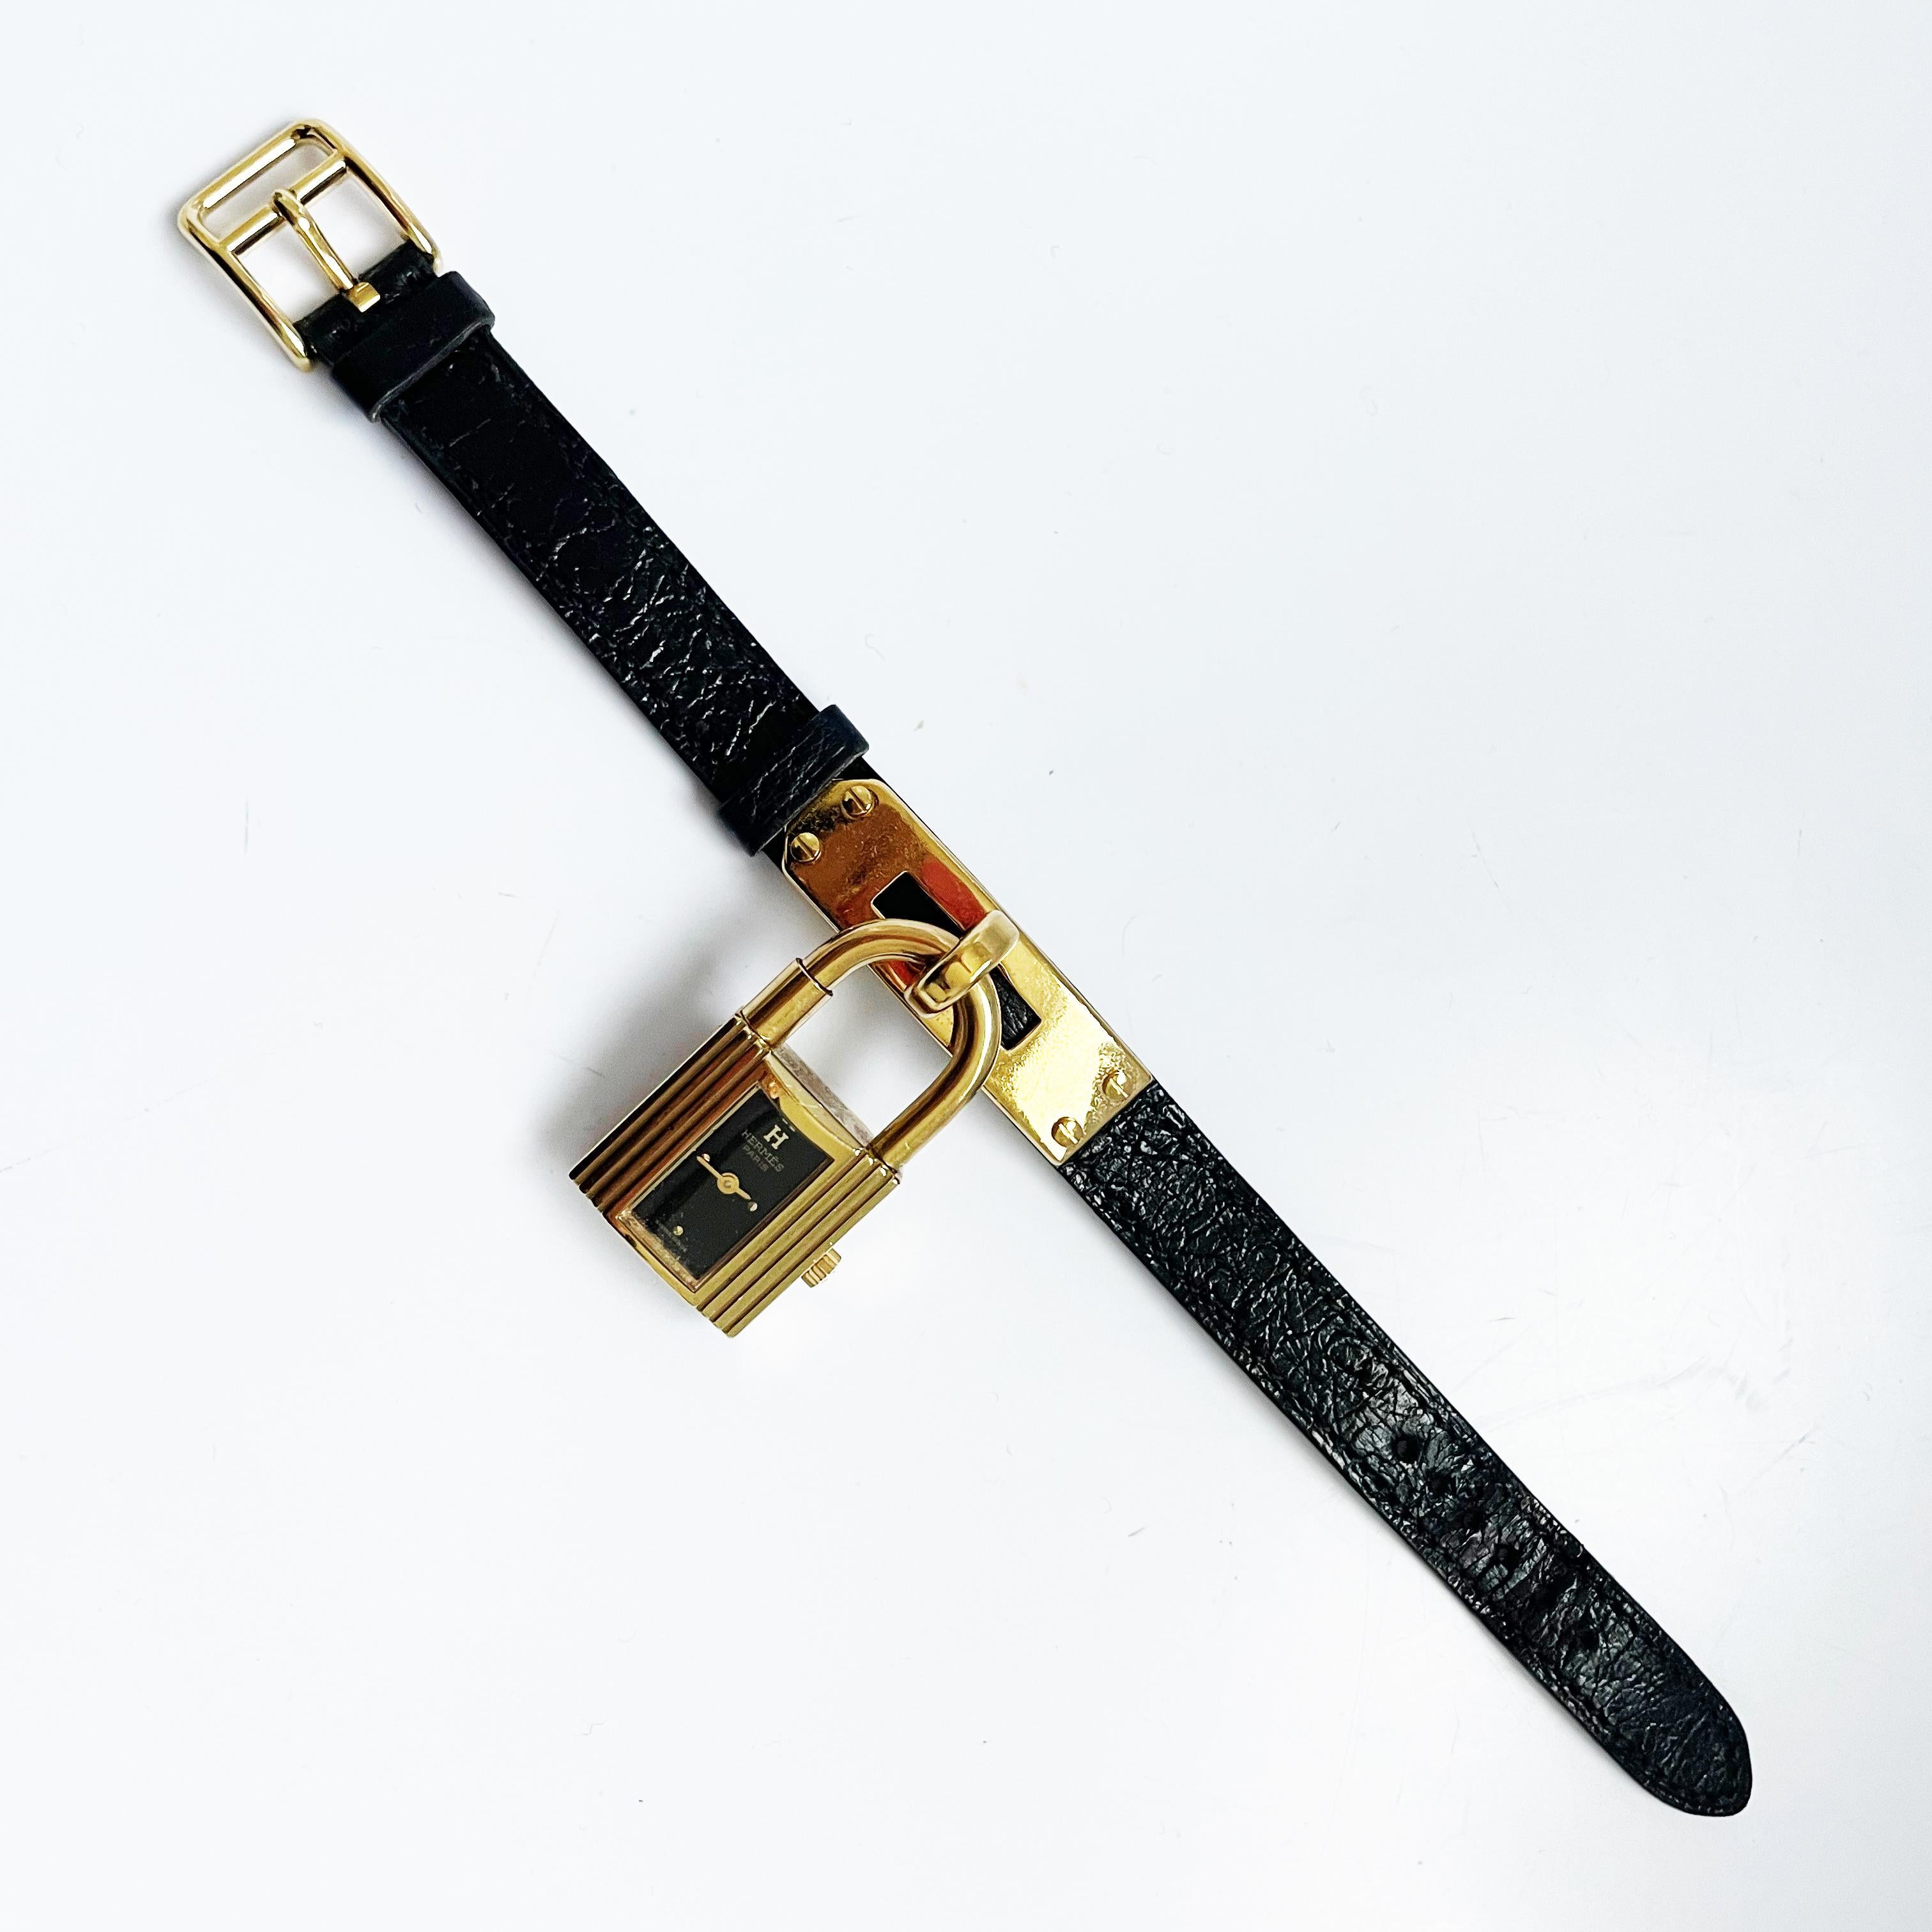 Authentique montre Hermes Kelly cadena vintage des années 90 en métal doré avec un bracelet en cuir Chèvre Mysore noir.  Estampillé T dans un cercle, indiquant une année de production 1990.  Style iconique avec cadran de montre noir et mouvement